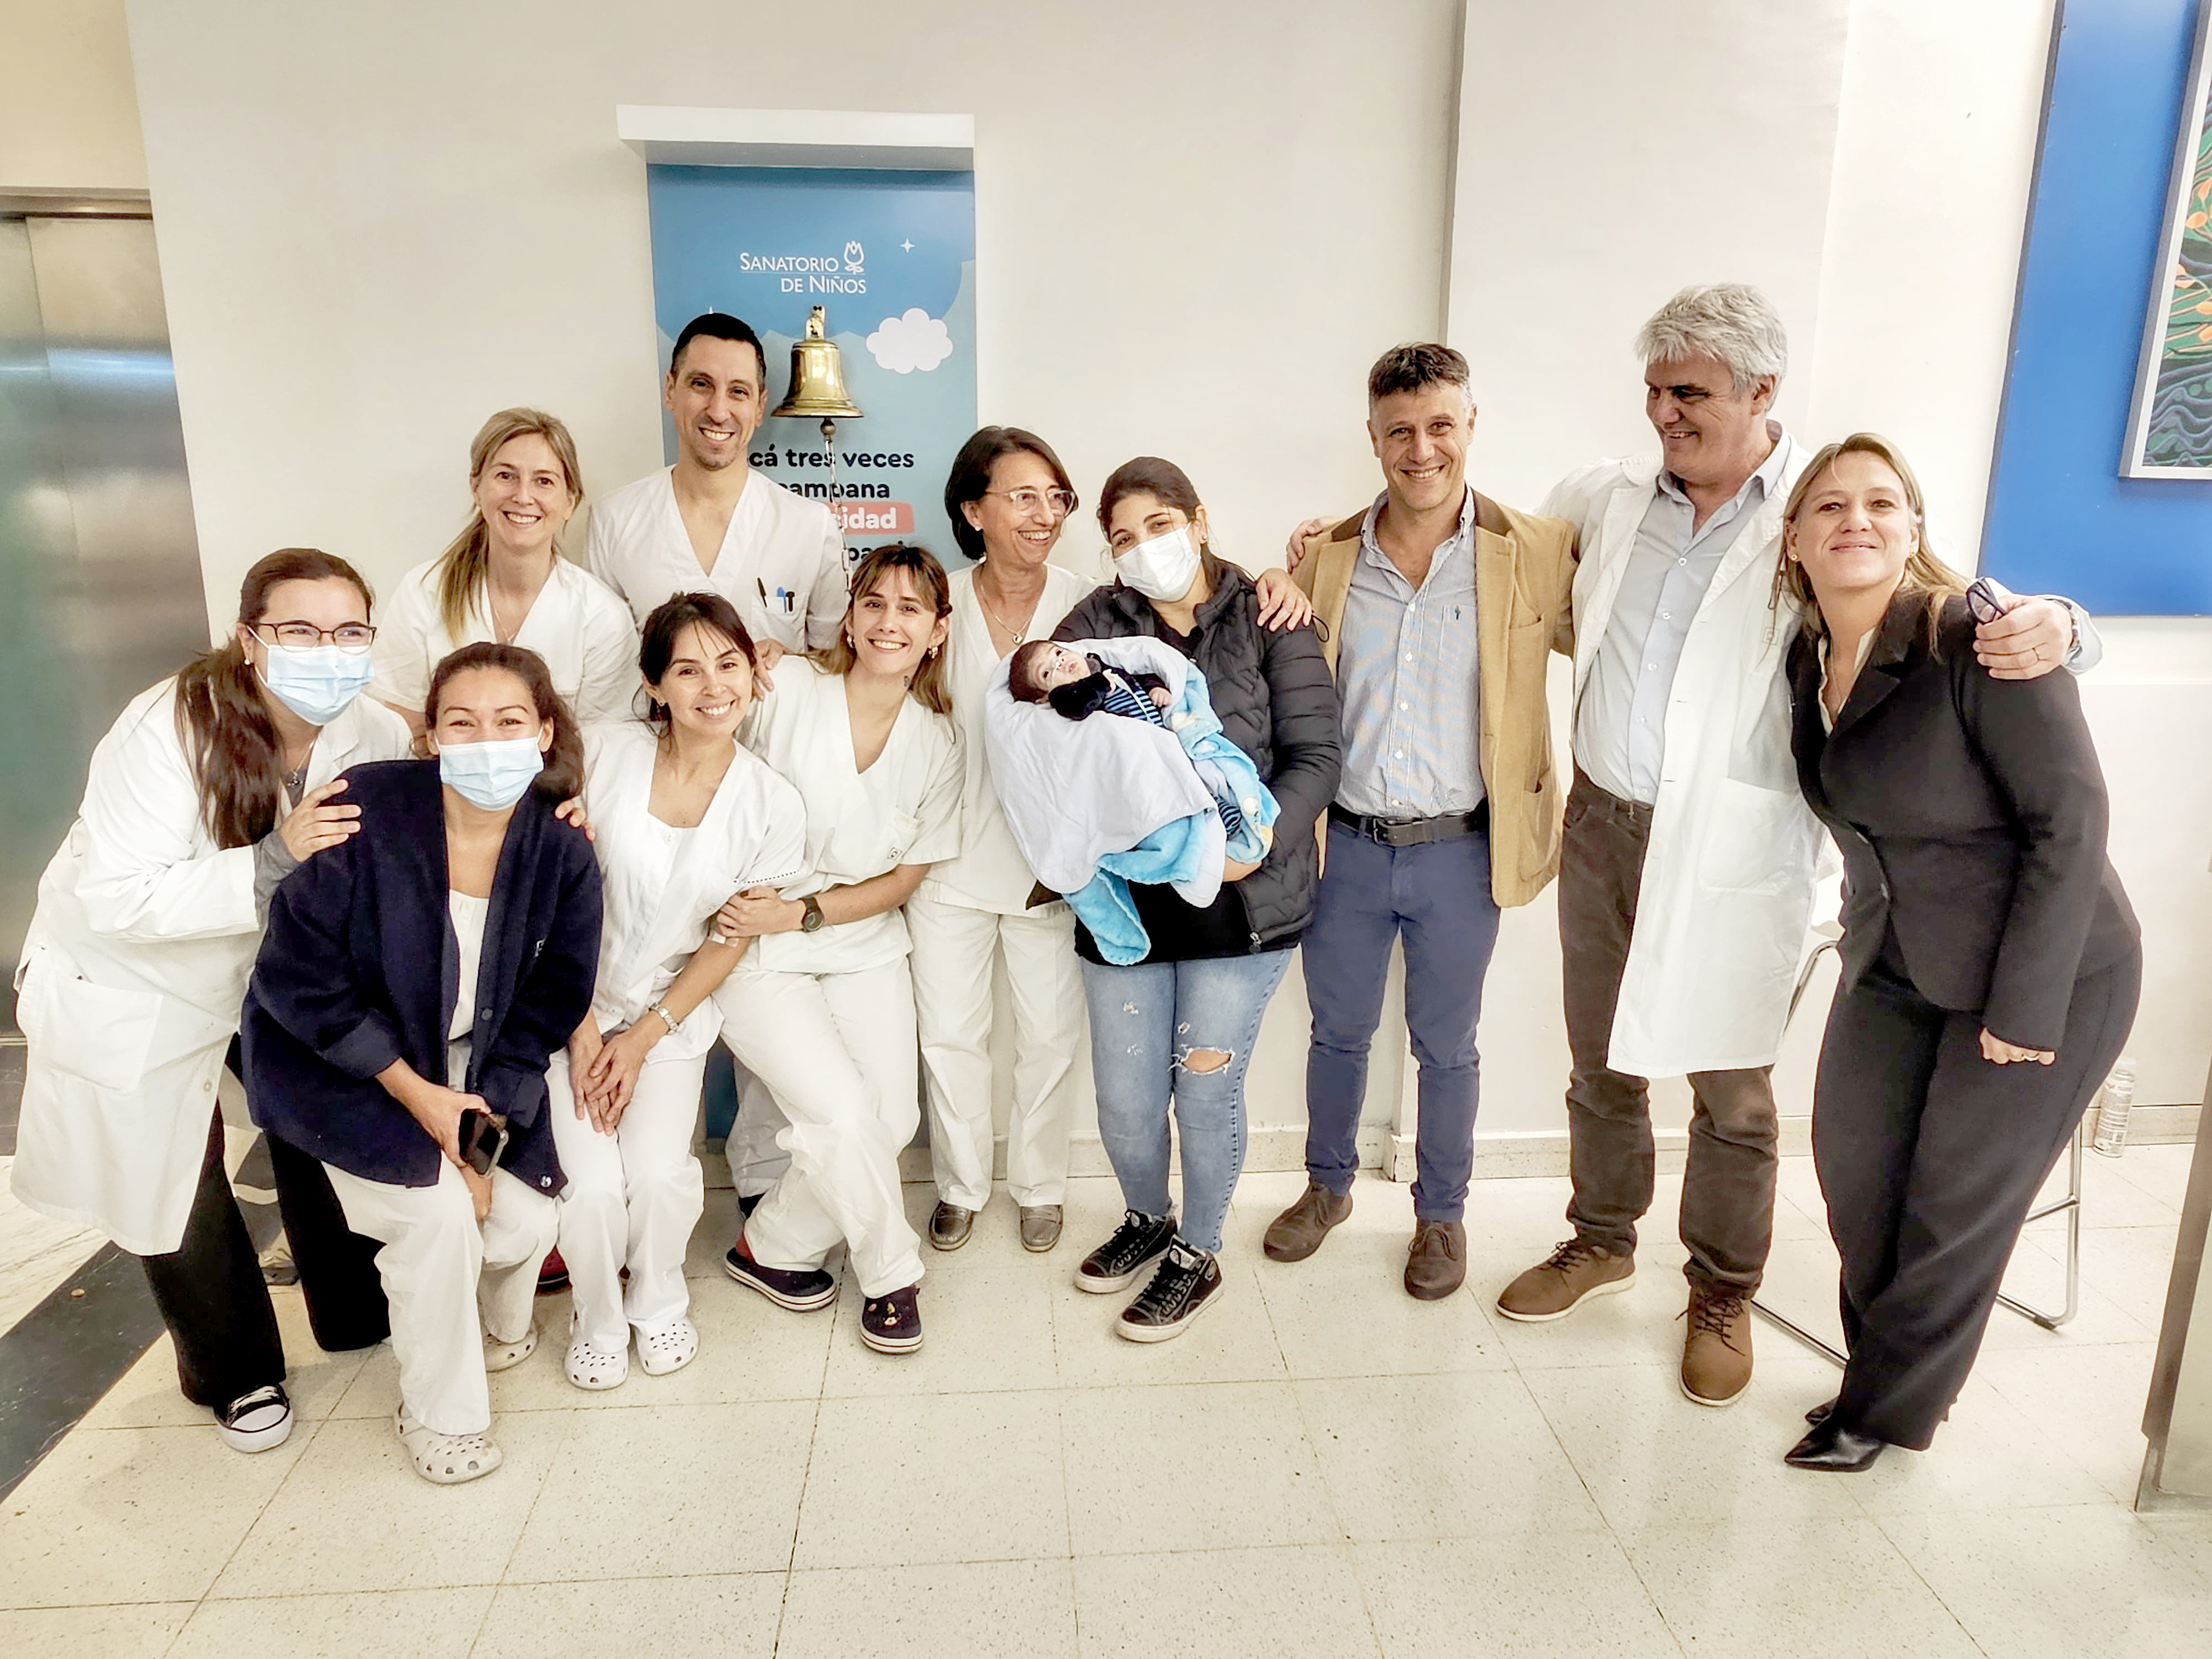 Hito médico en Sanatorio de Niños y en Argentina: el primer bebé trasplantado al nacer, fue dado de alta.